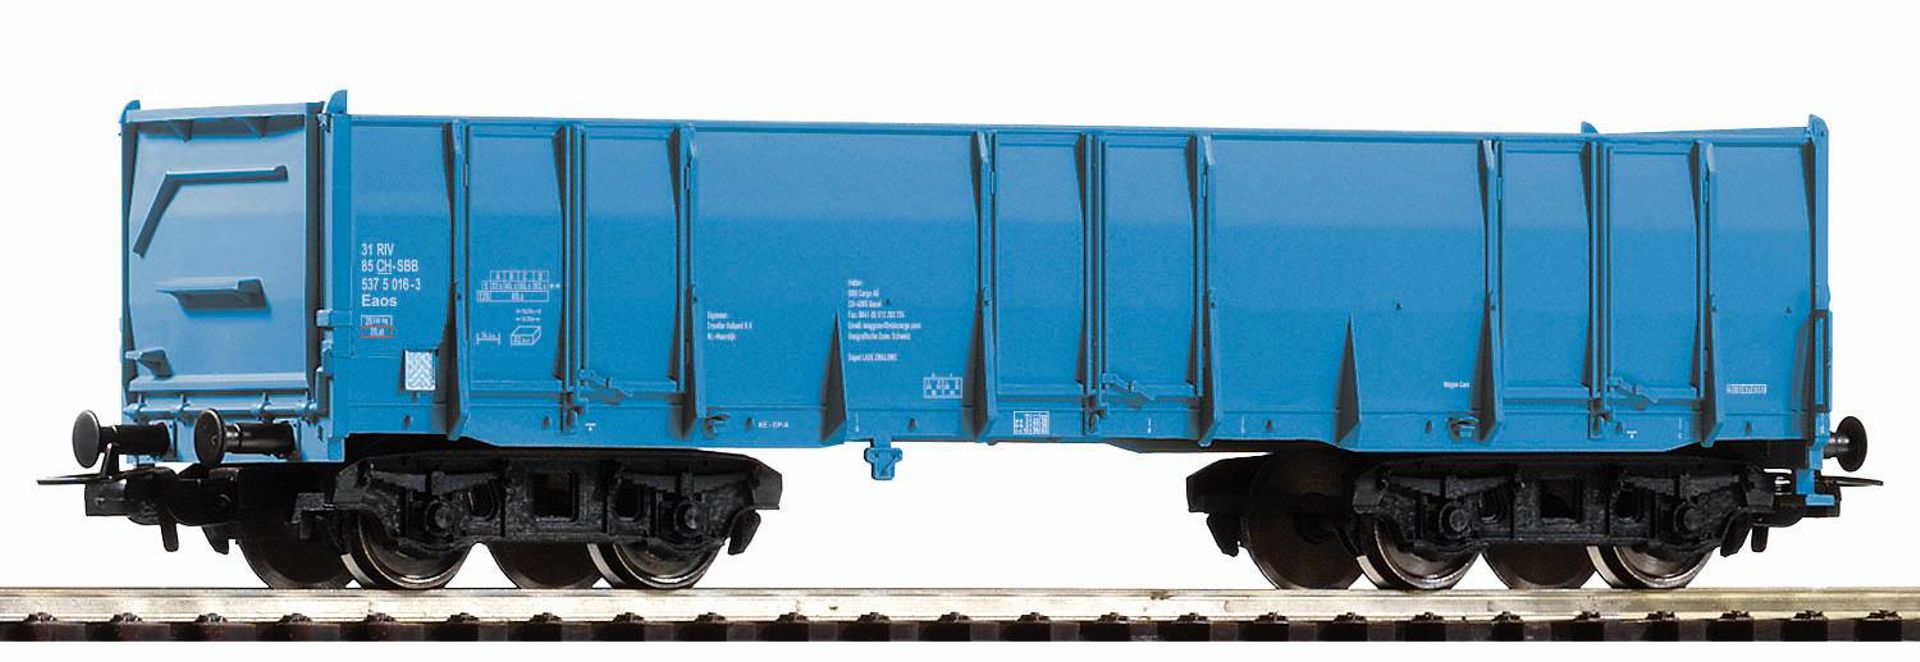 Piko 98546-B3 - Hochbordwagen Eaos, blau, SBB, Ep.VI, blau, Betriebsnummer 3